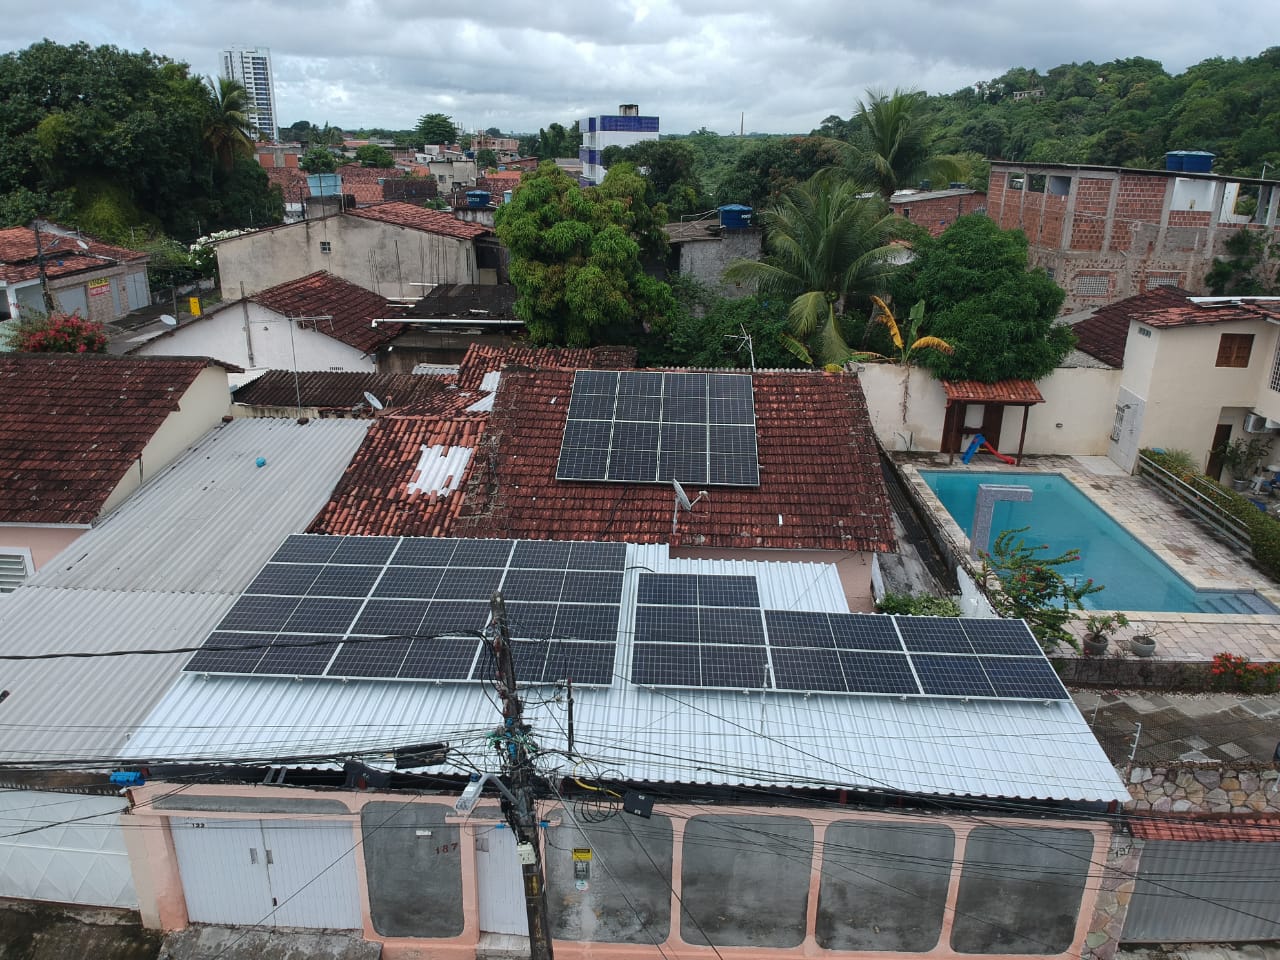 Sistema realizado no bairro do Varzea, Recife-PE. Composto por 27 módulos Solar Fotovoltaico de potência 405W e 07 Micro Inversores Hoymiles. Com Plataforma para monitoramento Online.